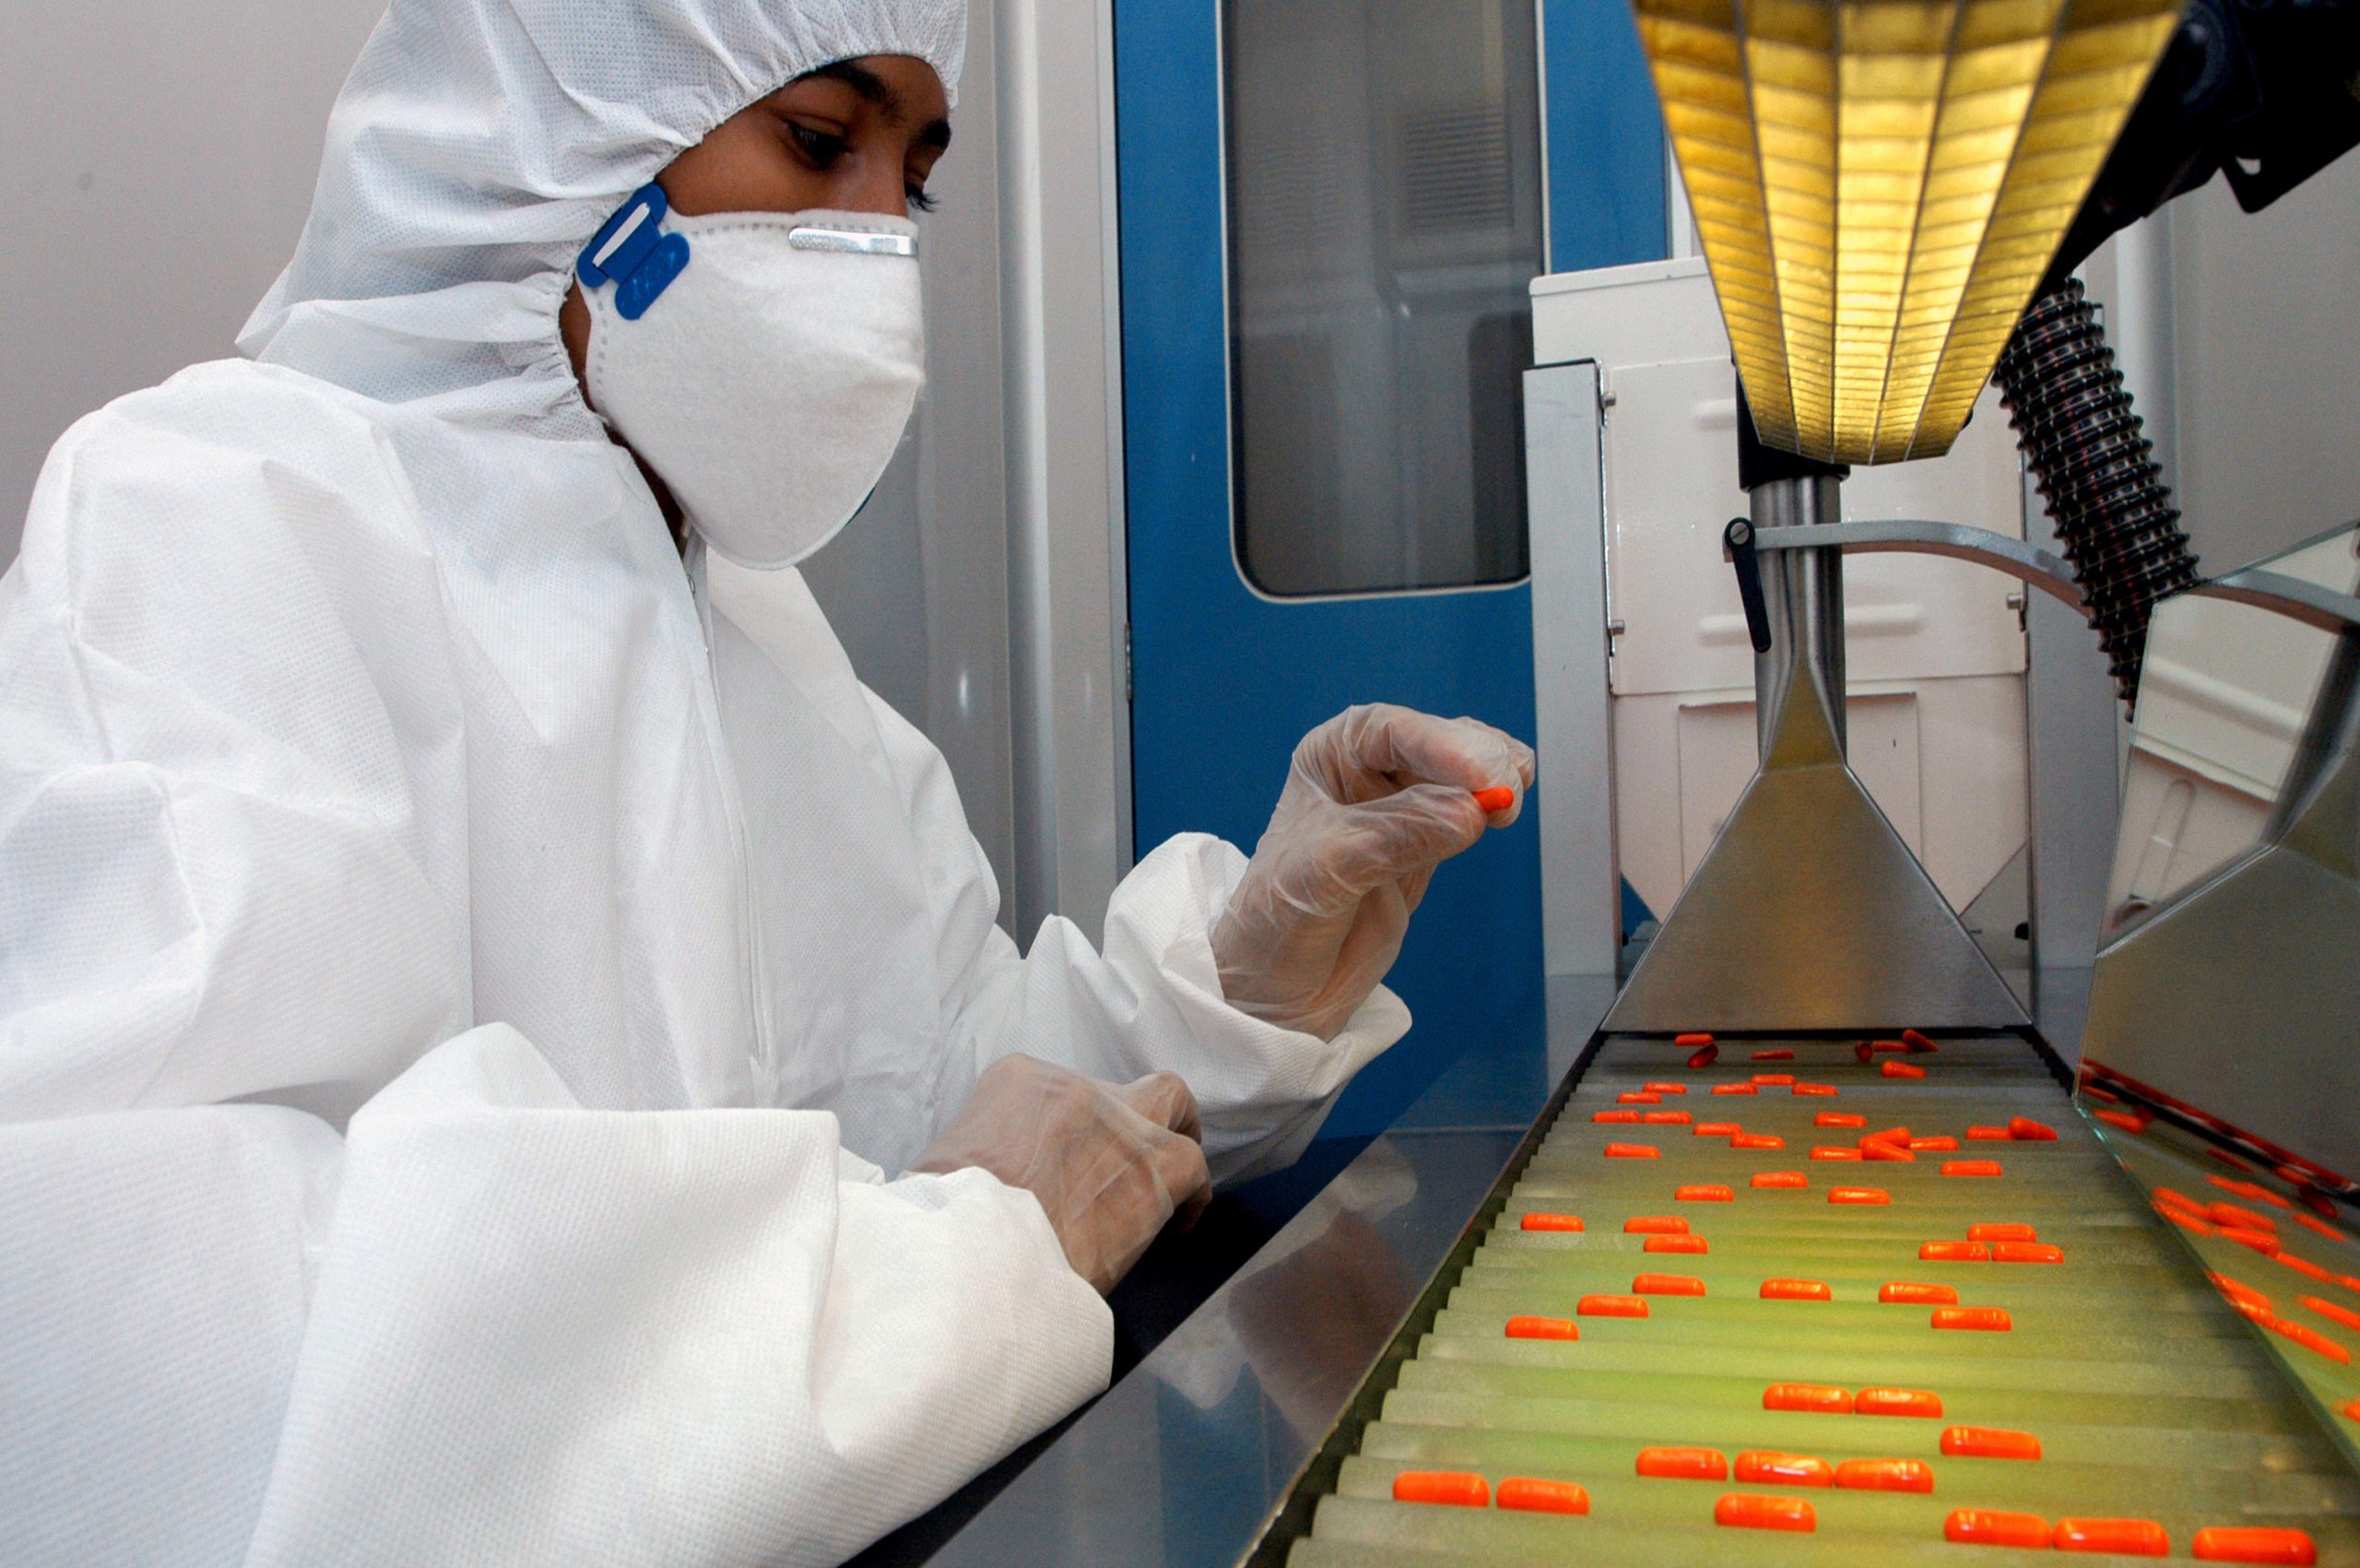 Foto de um pesquisador em um laboratório. Ele usa macacão, luvas  e máscara brancos, para proteção, e está em frente à uma máquina com uma mini esteira cheia de medicamentos cor de laranja.